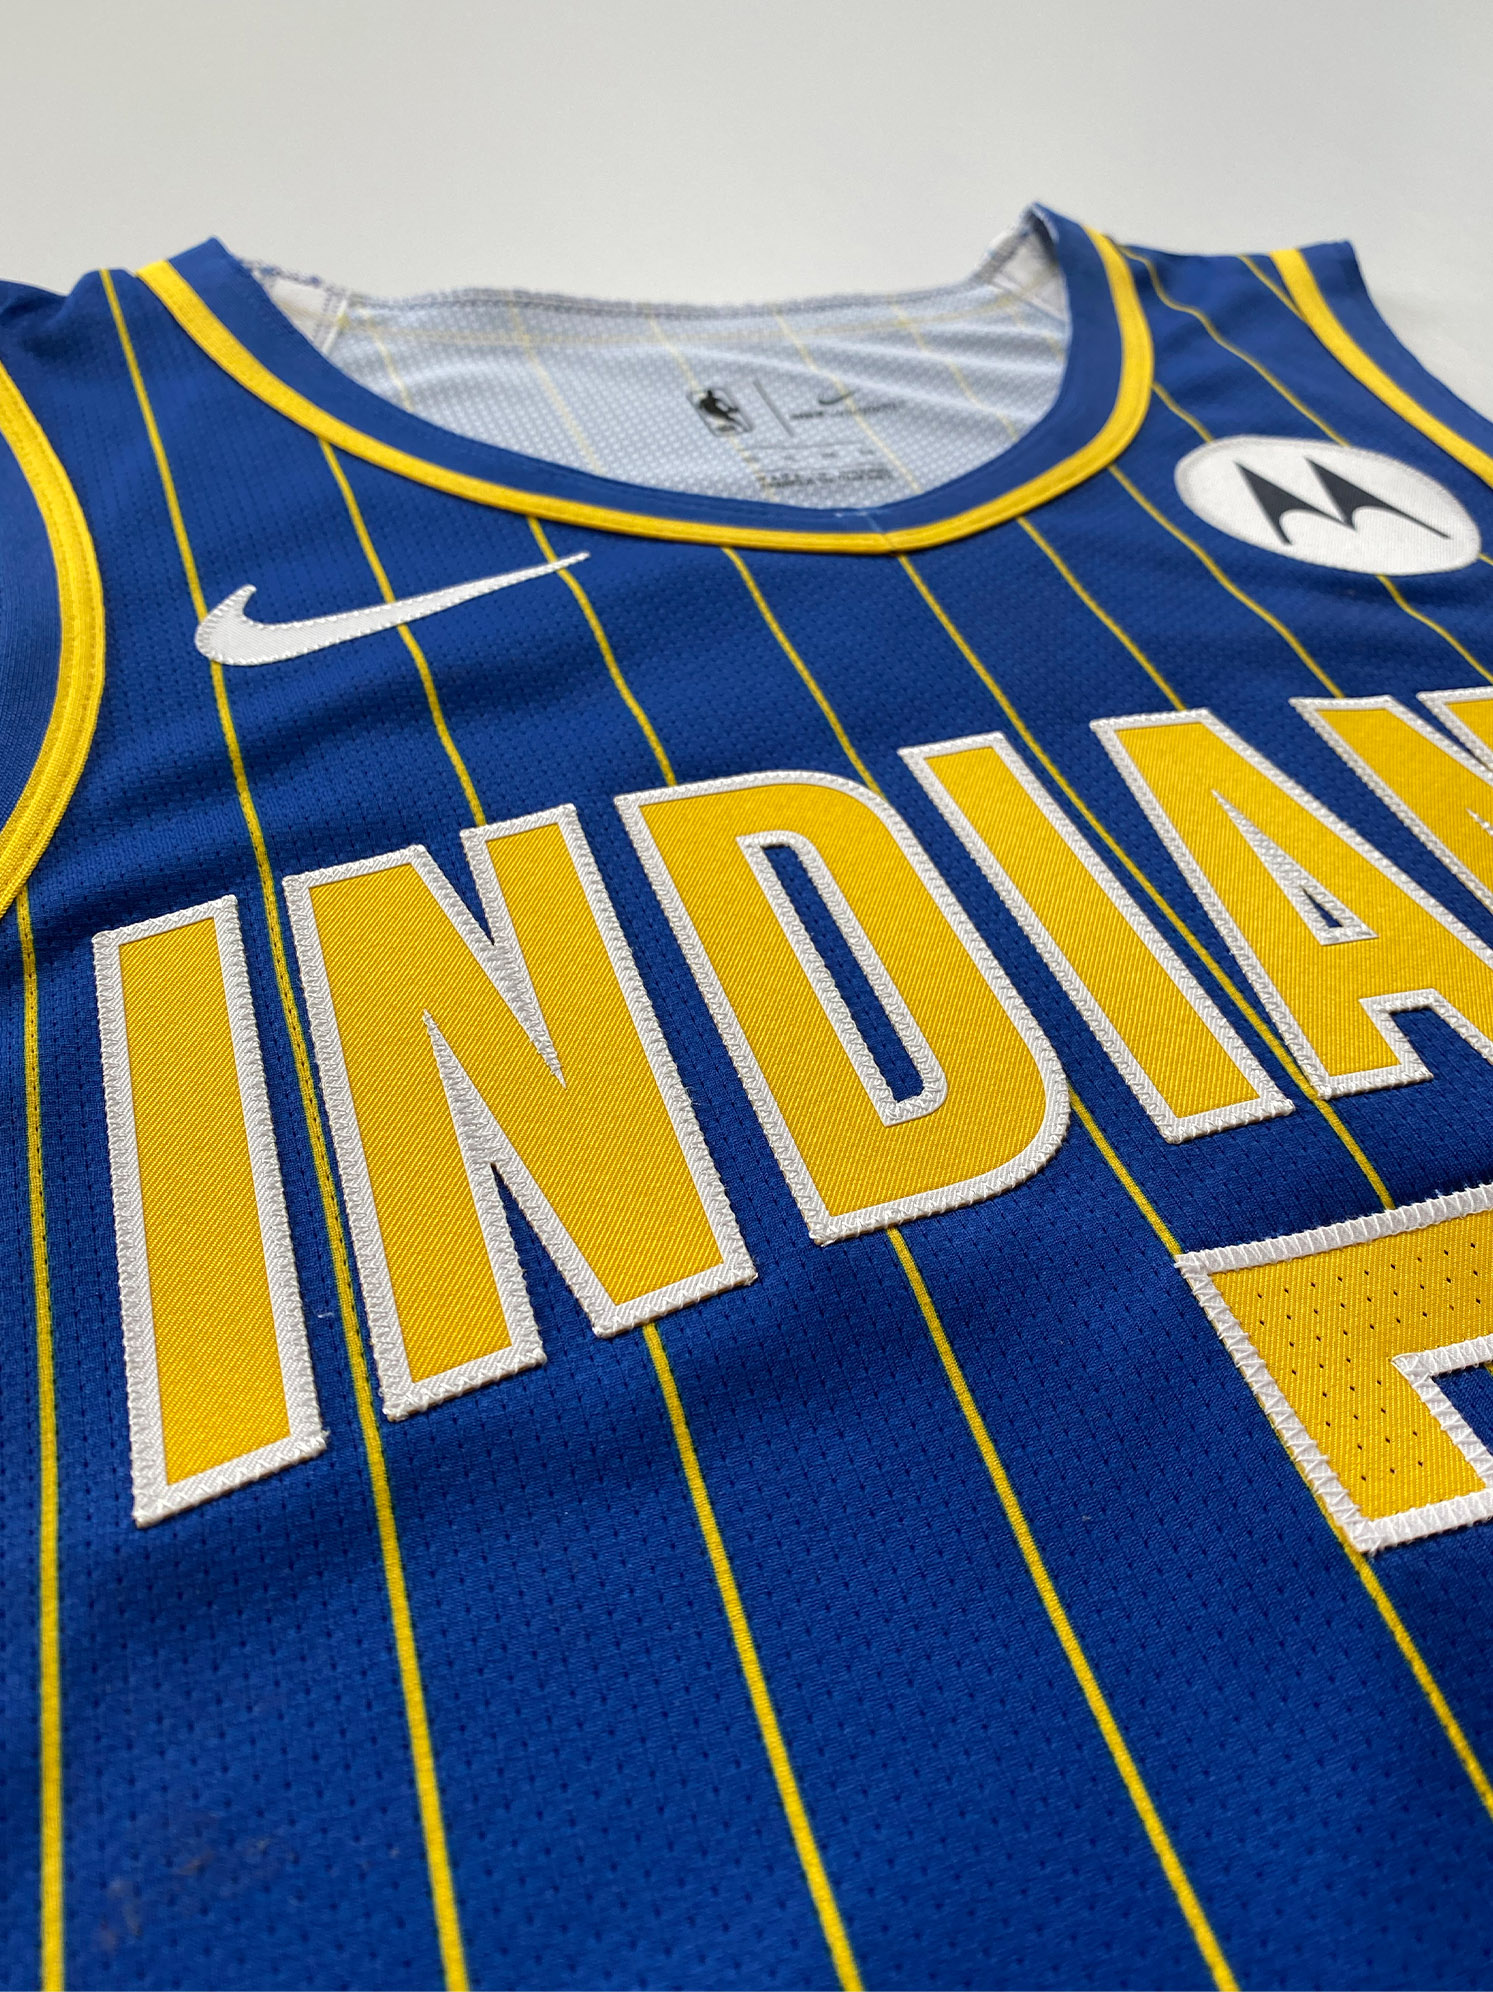 Pacers unveil new City Edition uniforms